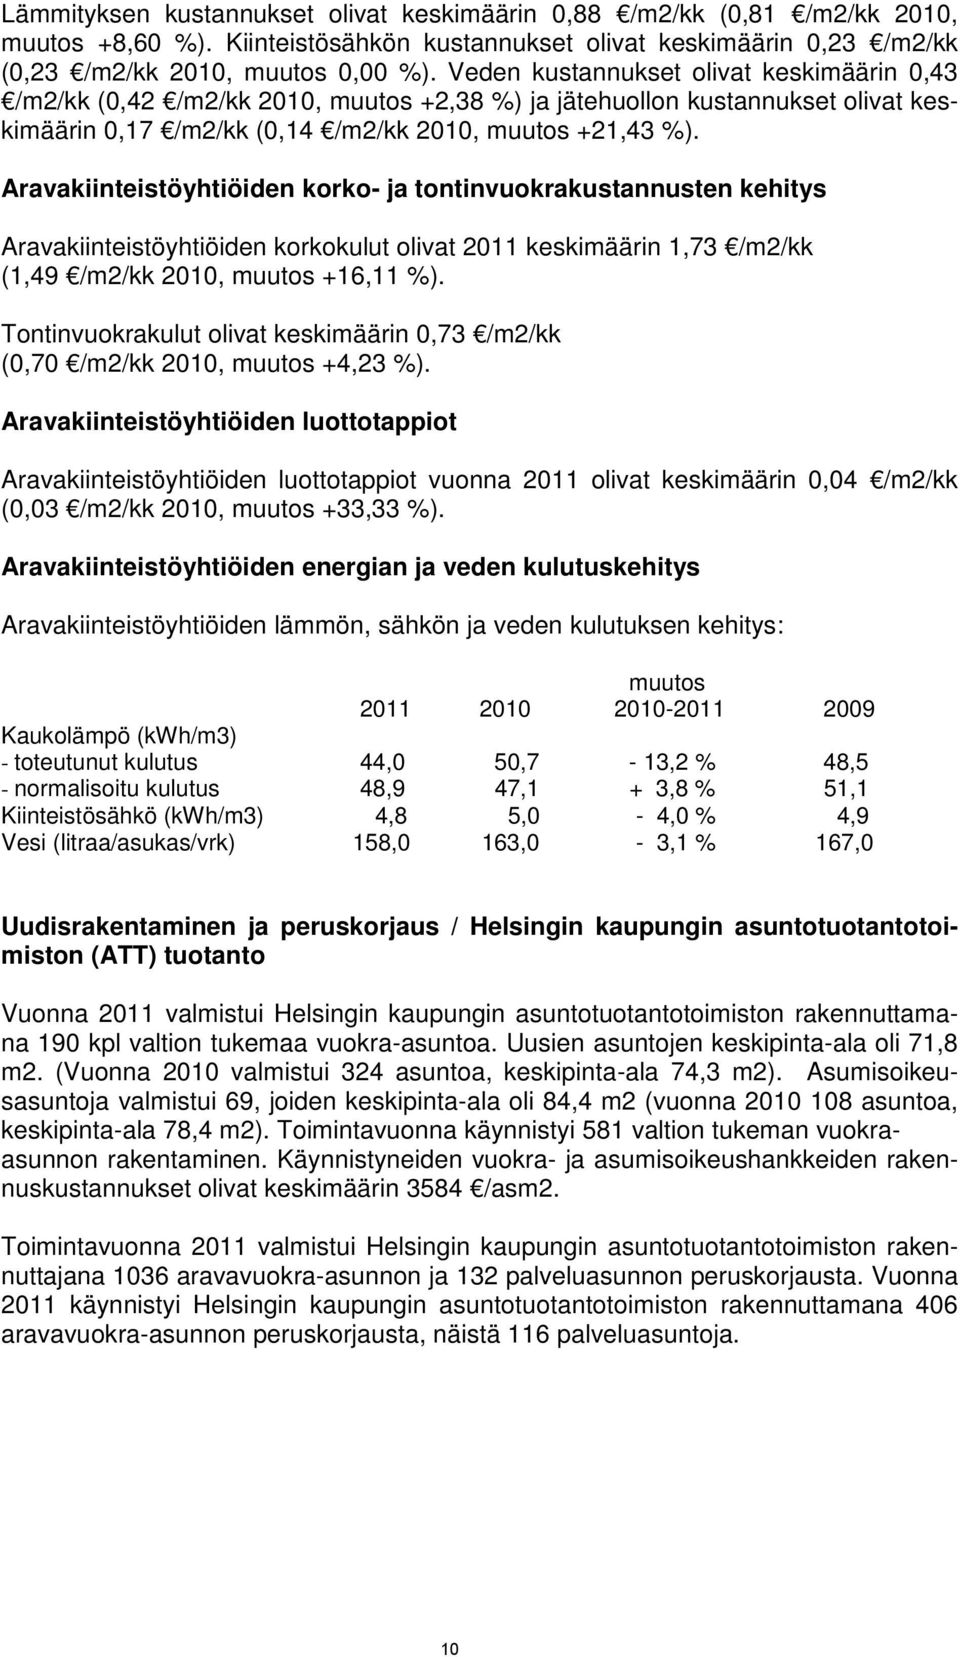 Aravakiinteistöyhtiöiden korko- ja tontinvuokrakustannusten kehitys Aravakiinteistöyhtiöiden korkokulut olivat 2011 keskimäärin 1,73 /m2/kk (1,49 /m2/kk 2010, muutos +16,11 %).